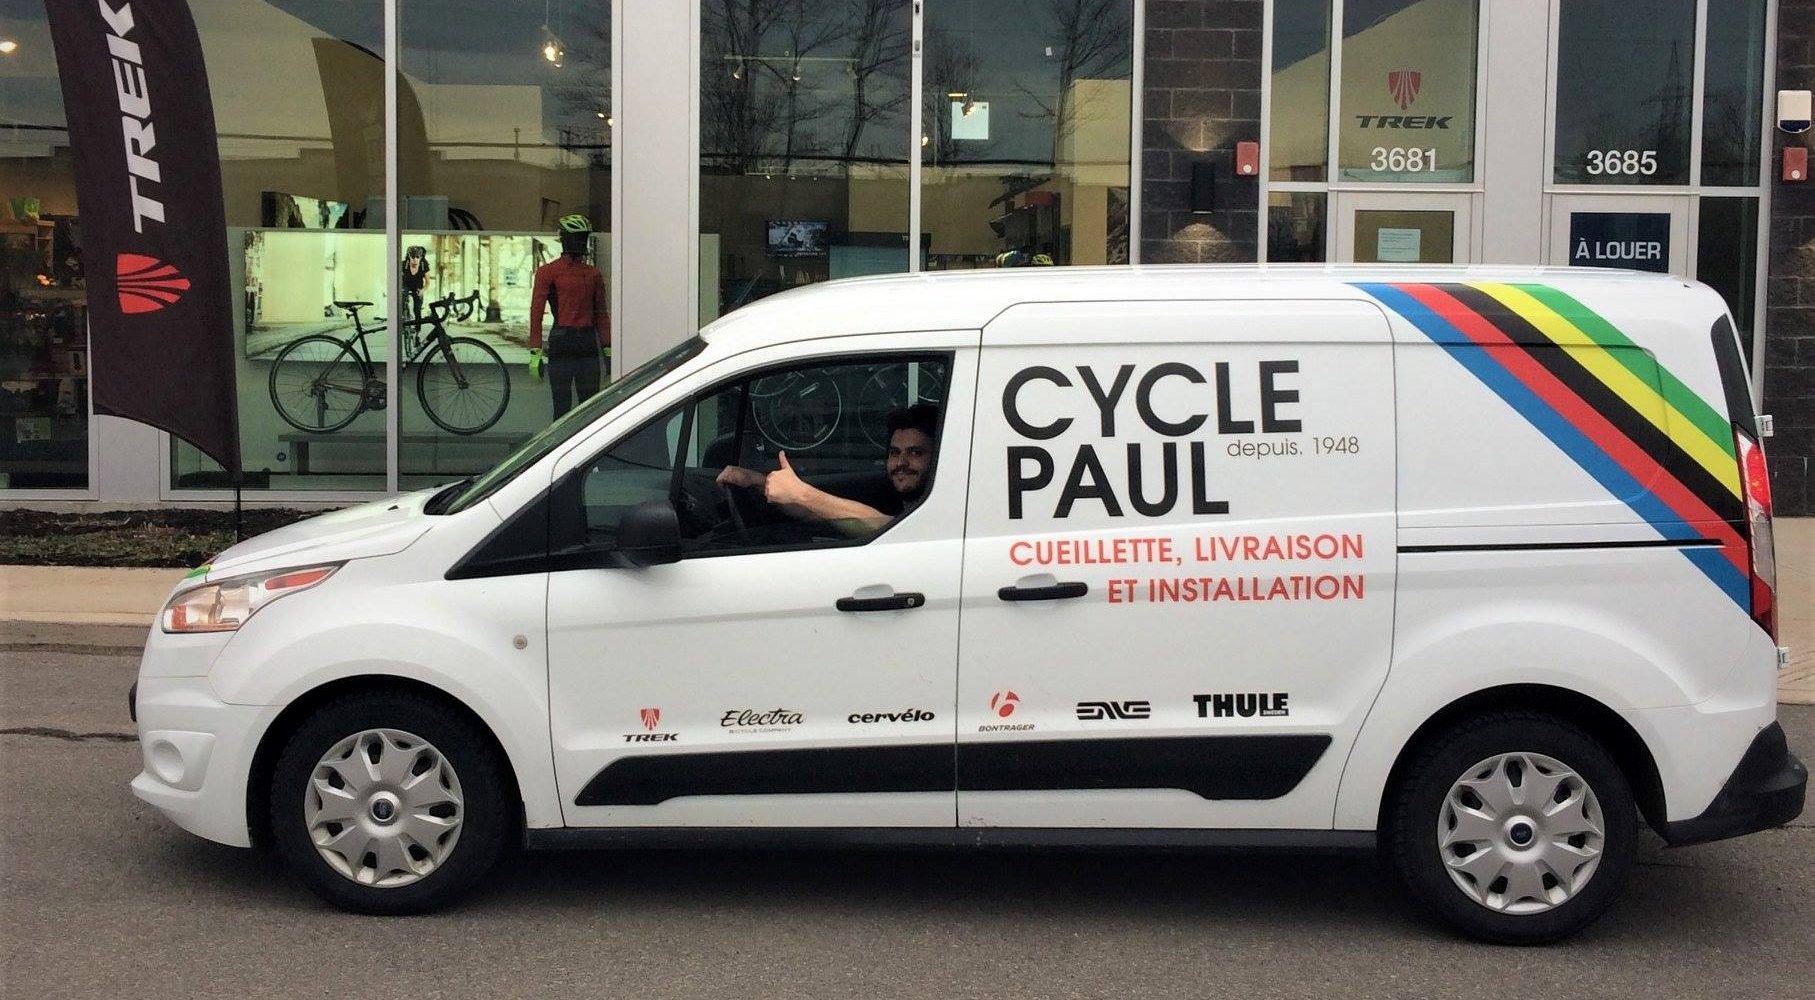 Cycle Paul